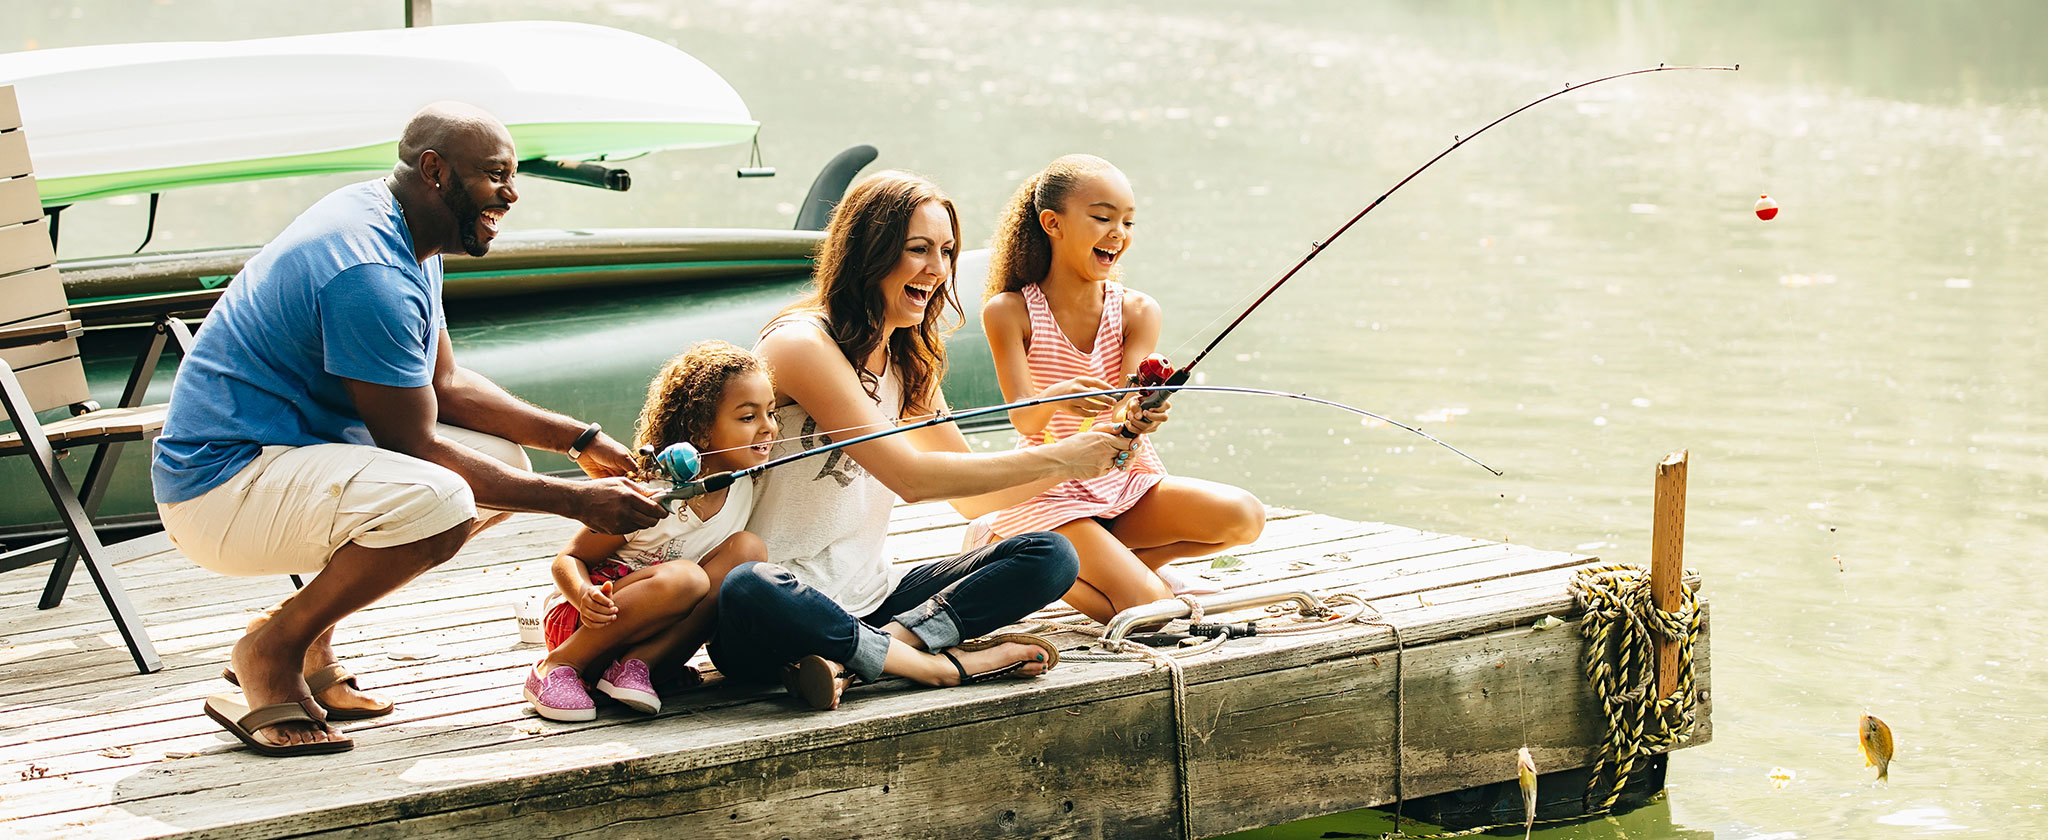 Family enjoying fishing